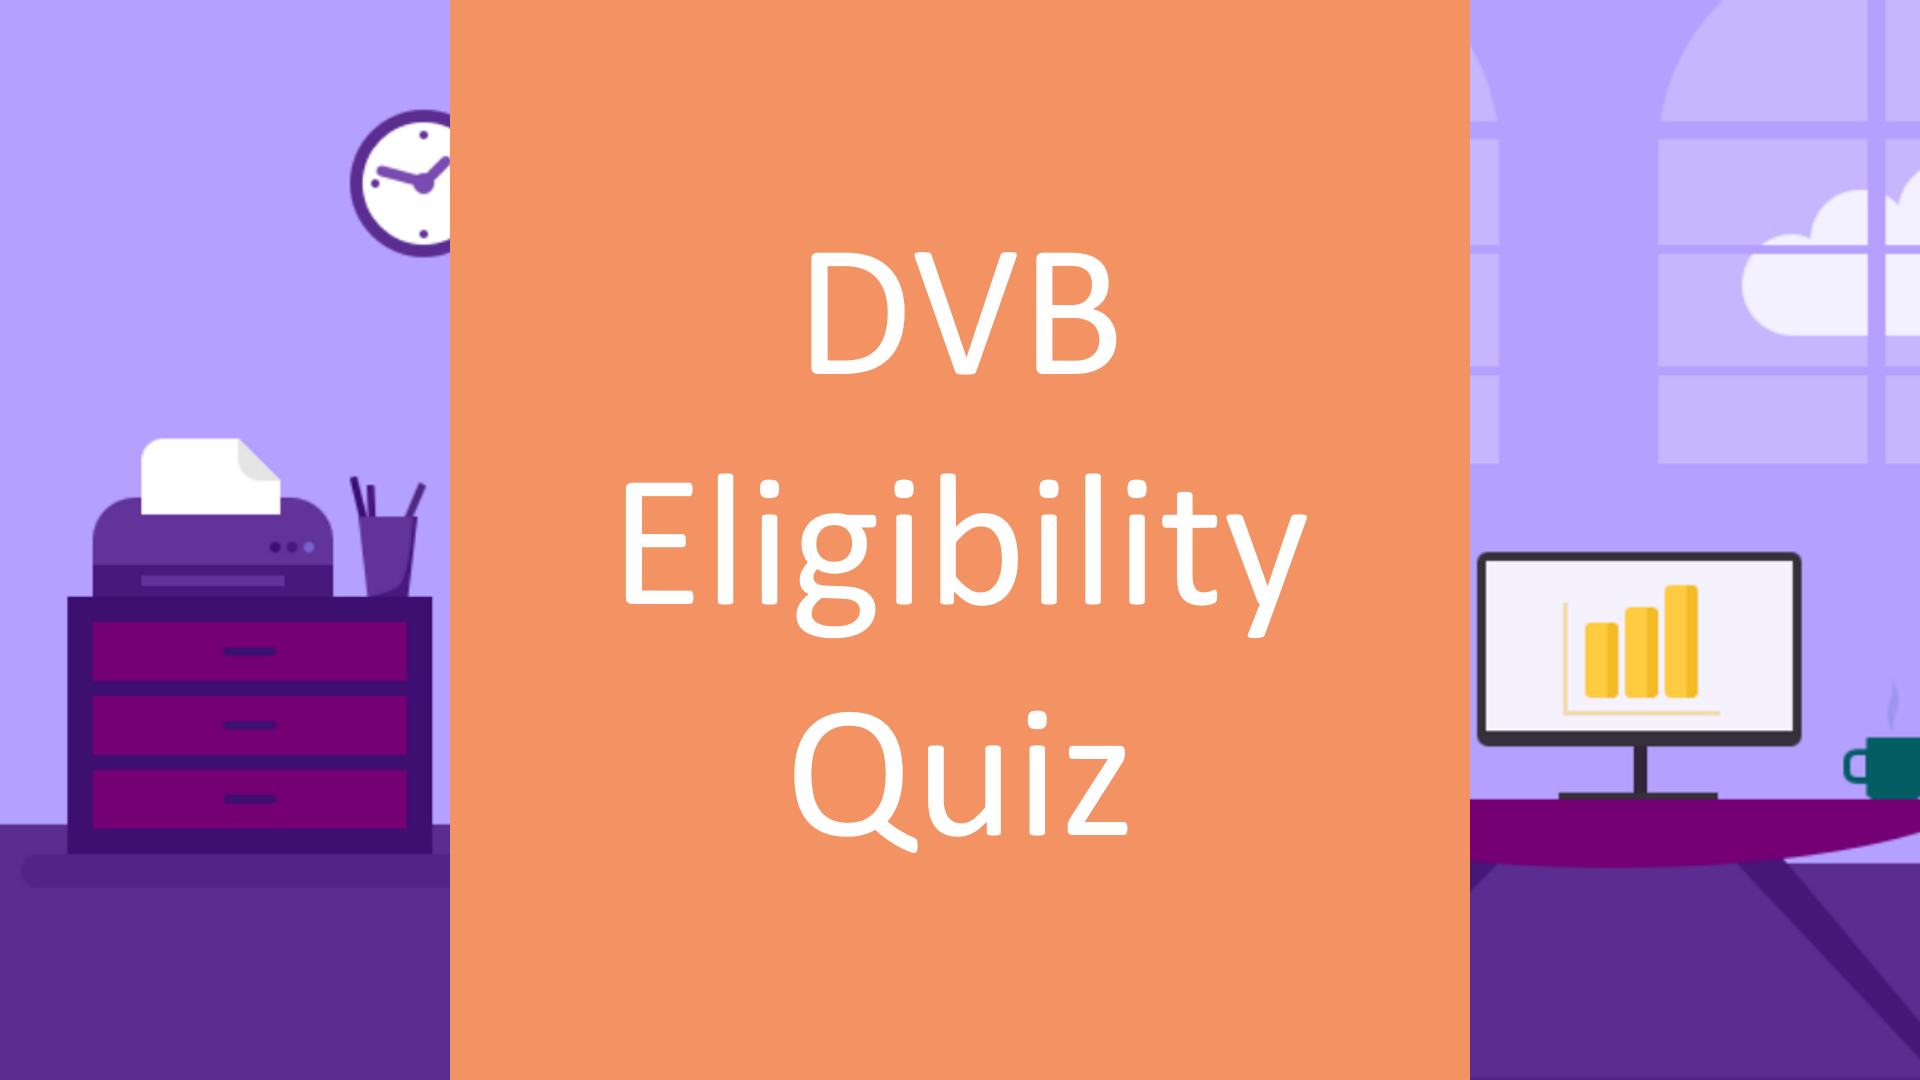 DVB Eligibility Quiz